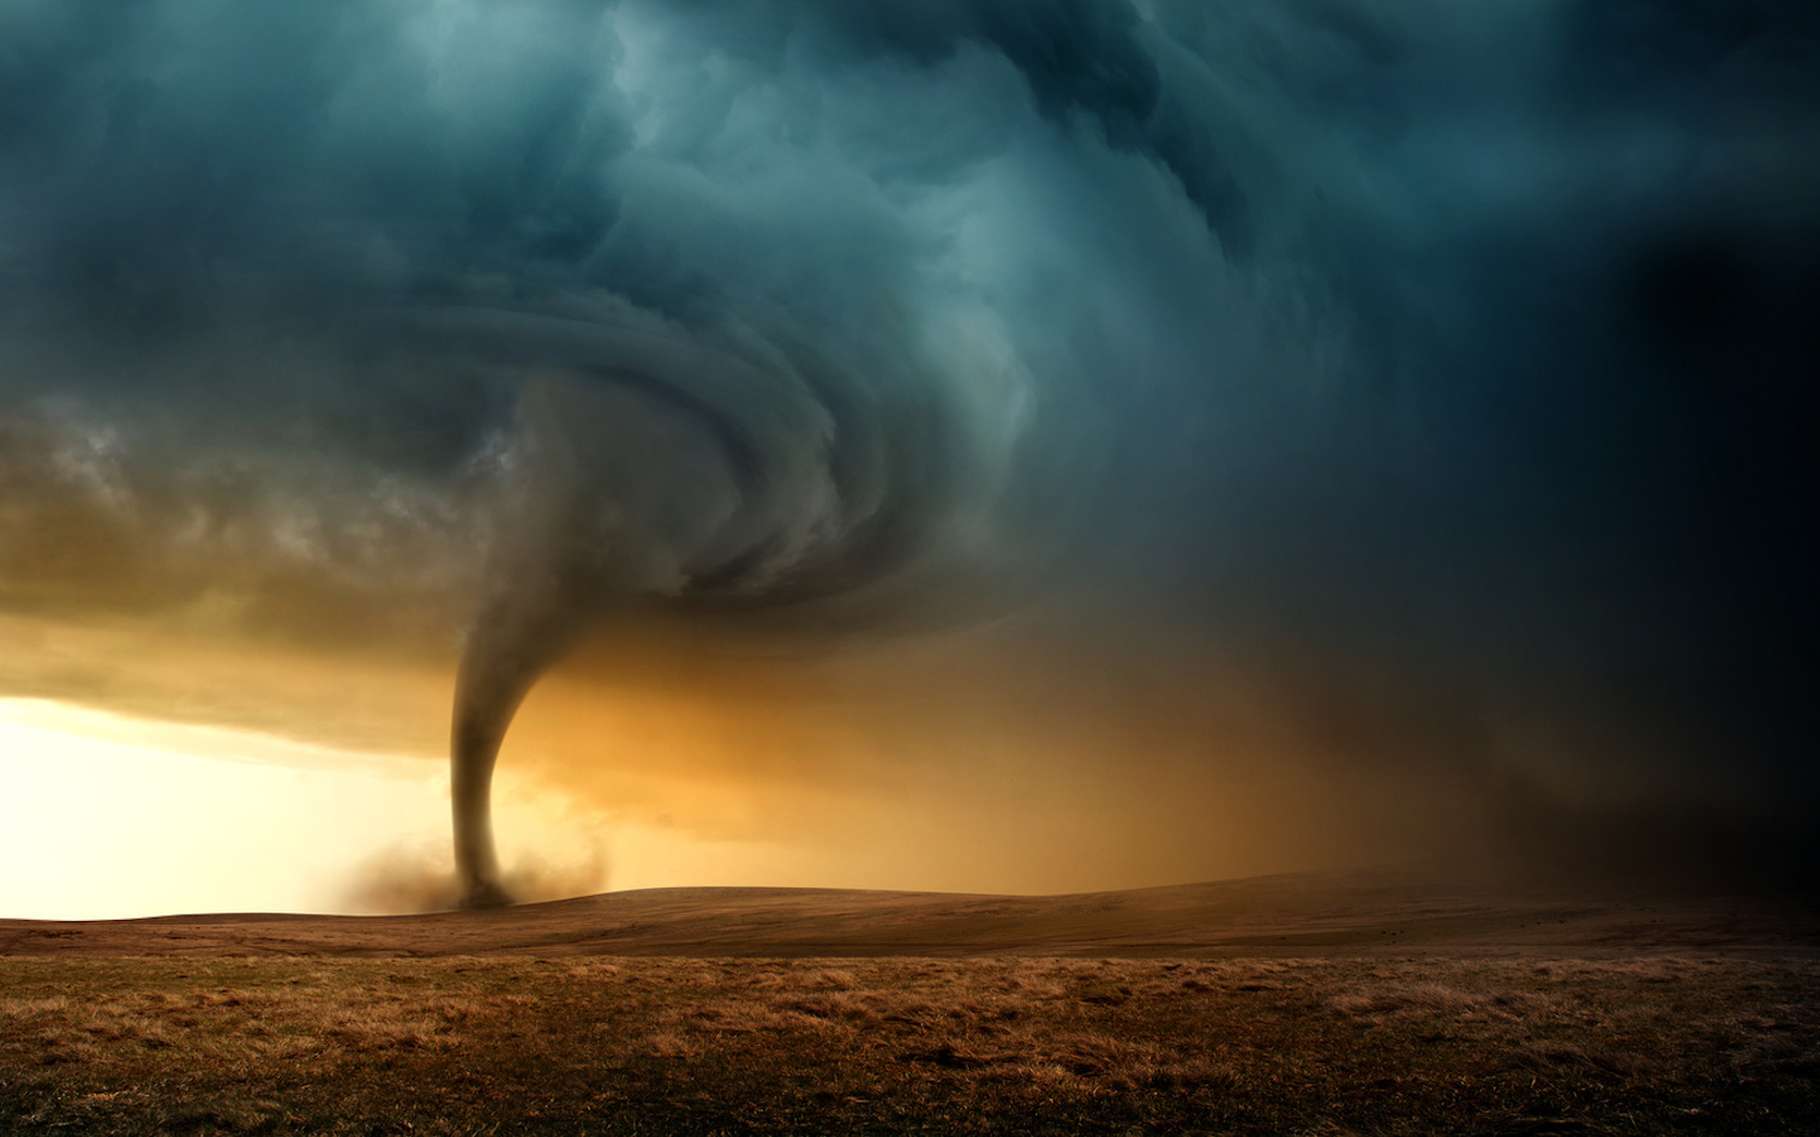 Les tornades sont classées selon une échelle qui donne une idée de leur intensité, l’échelle de Fujita améliorée. © James Thew, Fotolia